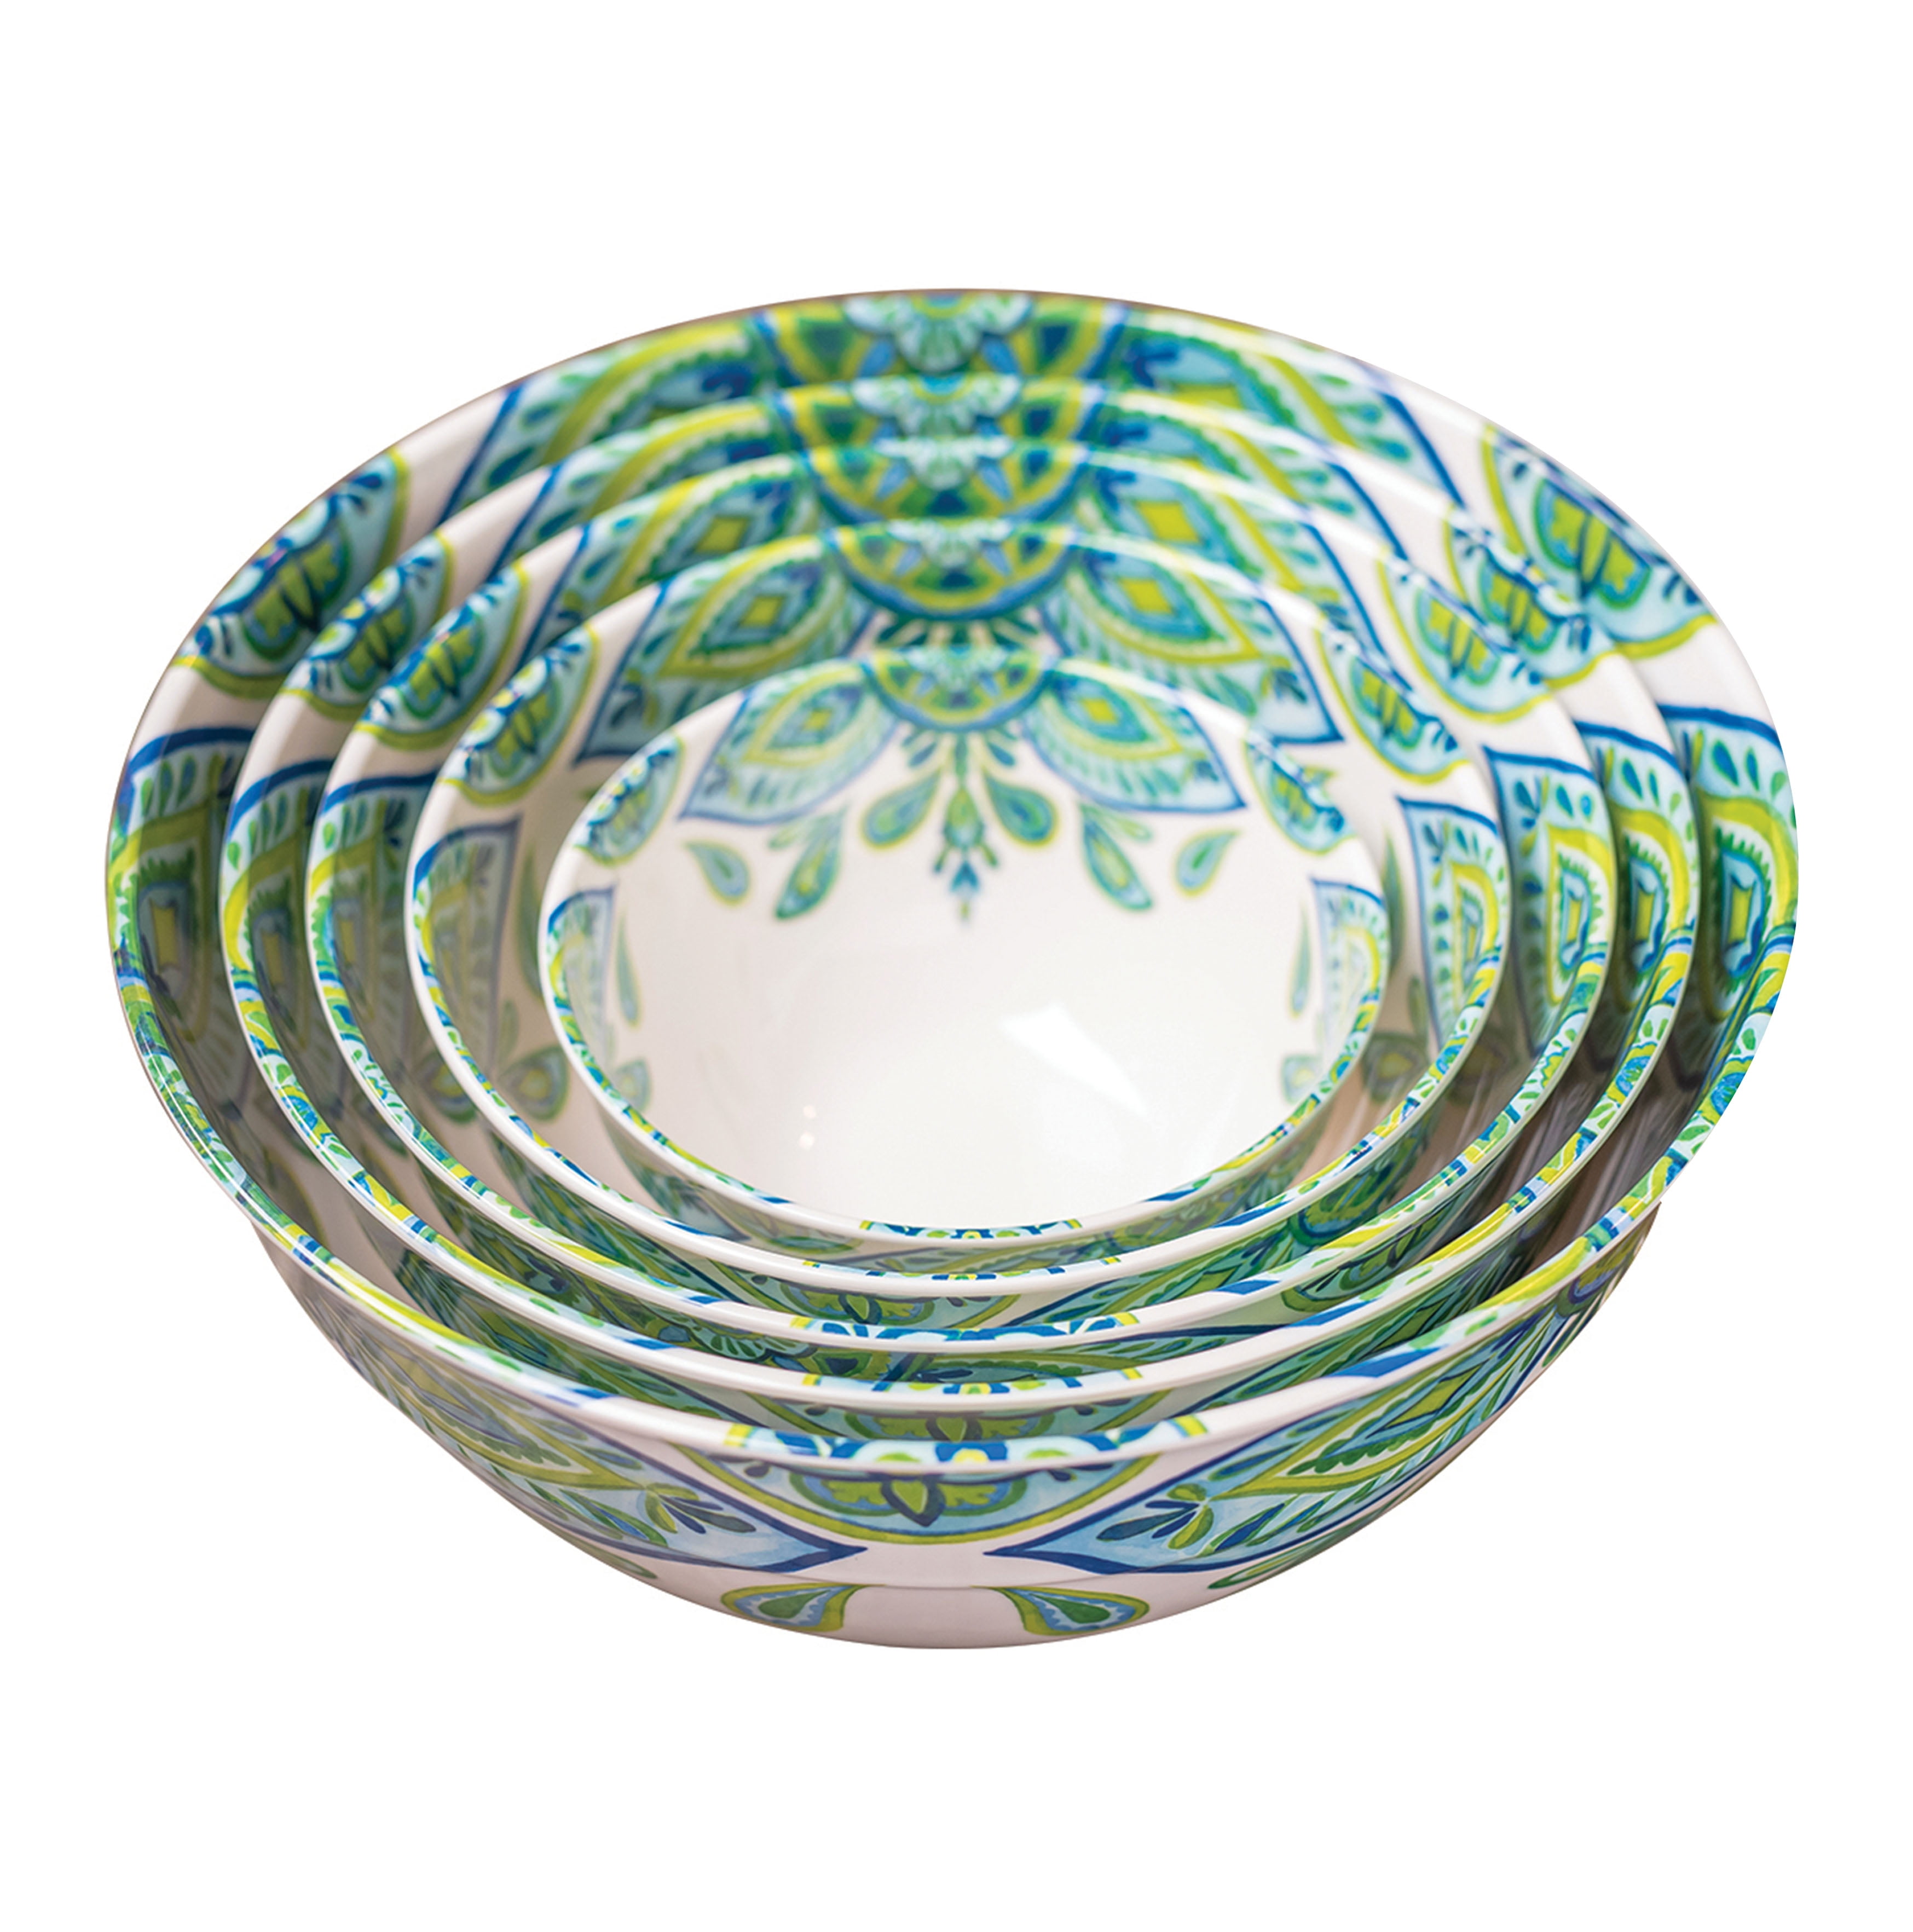 10-Piece Melamine Mixing Bowls with Lids Cortez Medallion, Size: 0.88